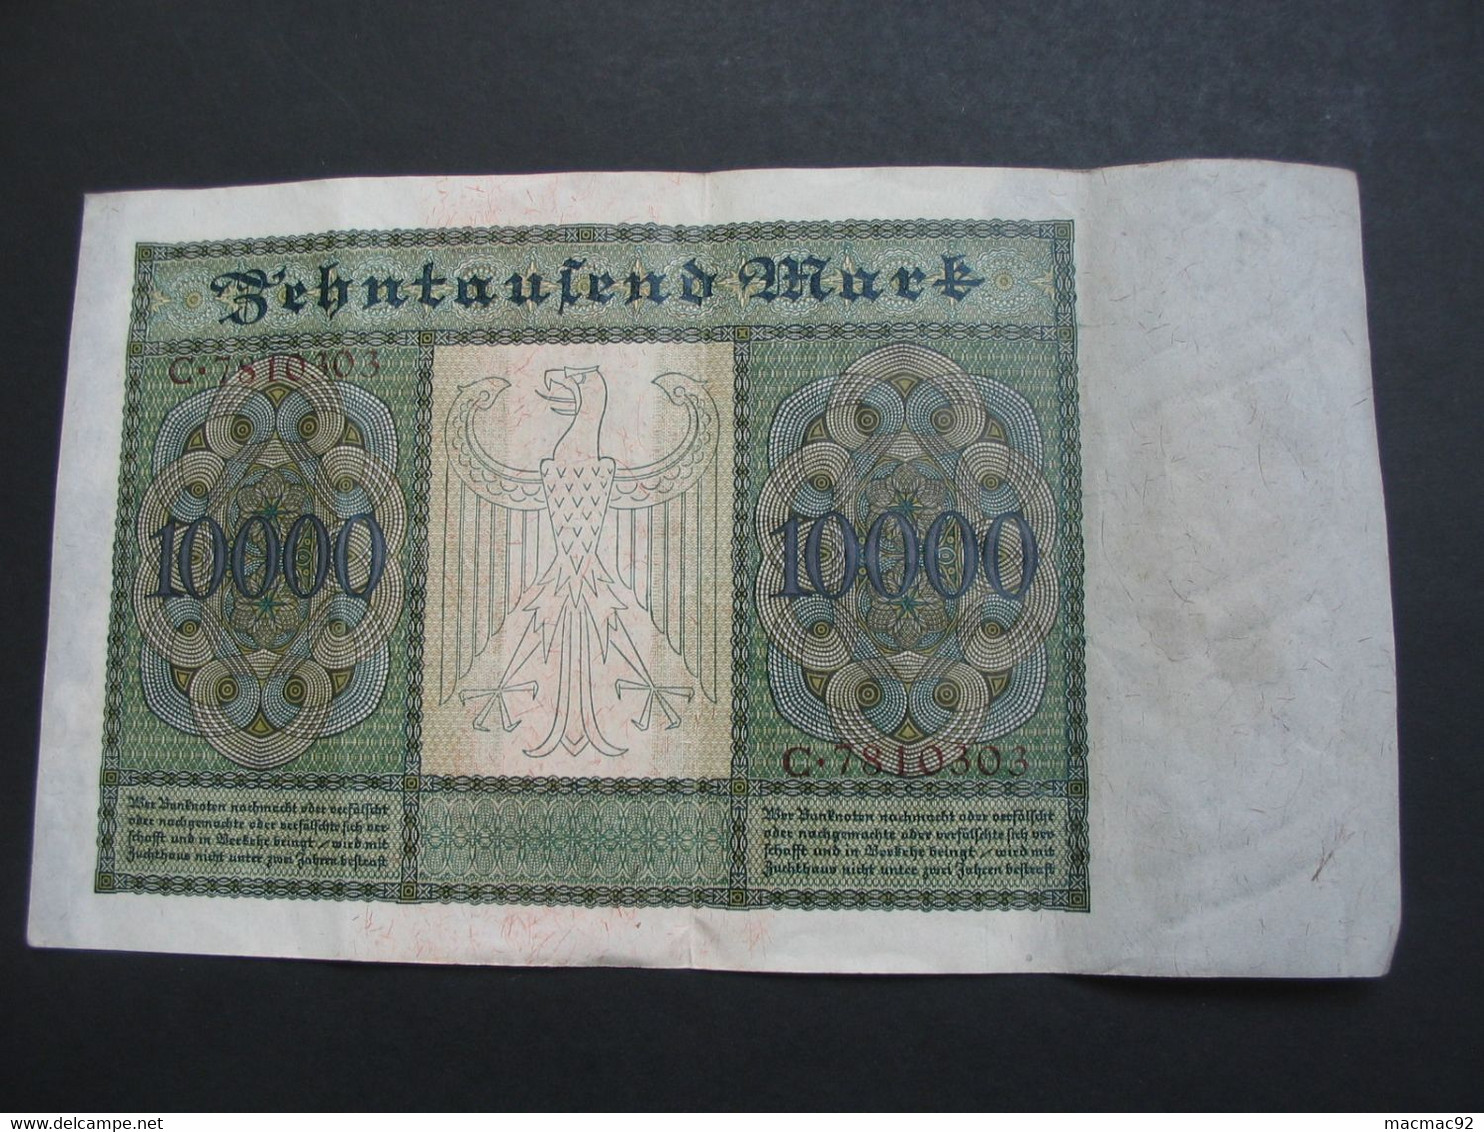 10 000 Zehntaufend Mark 1922 -  Reichsbanknote - Germany - Allemagne **** EN ACHAT IMMEDIAT **** - 10.000 Mark